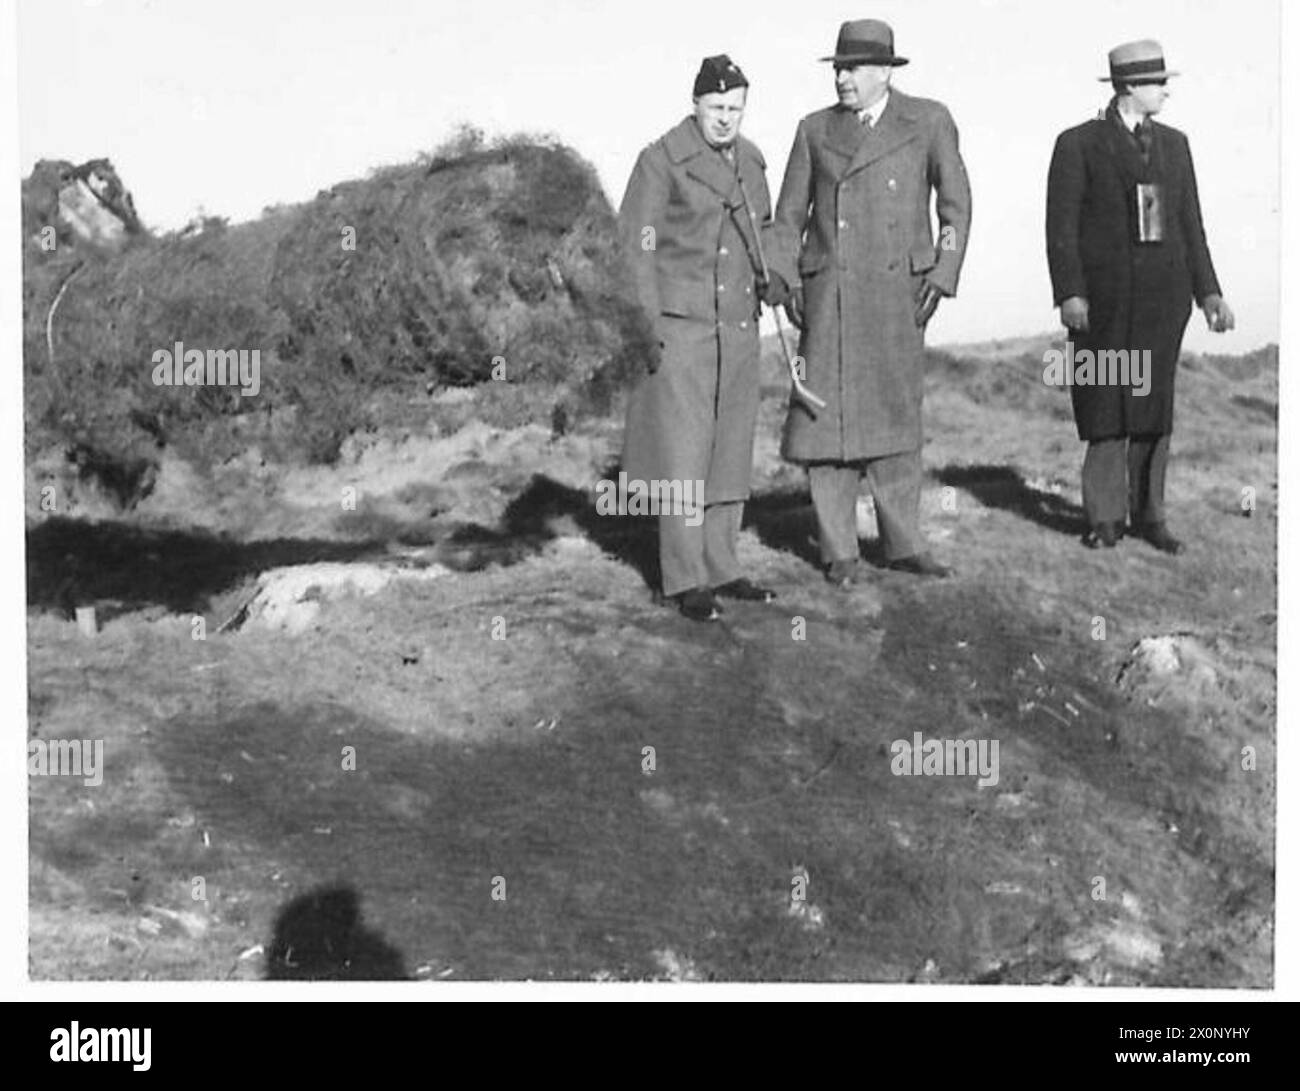 VISITA A DOVER - Sir Keith Murdoch che ispeziona "Winnie" la pistola che attraversa il canale. Negativo fotografico, British Army Foto Stock